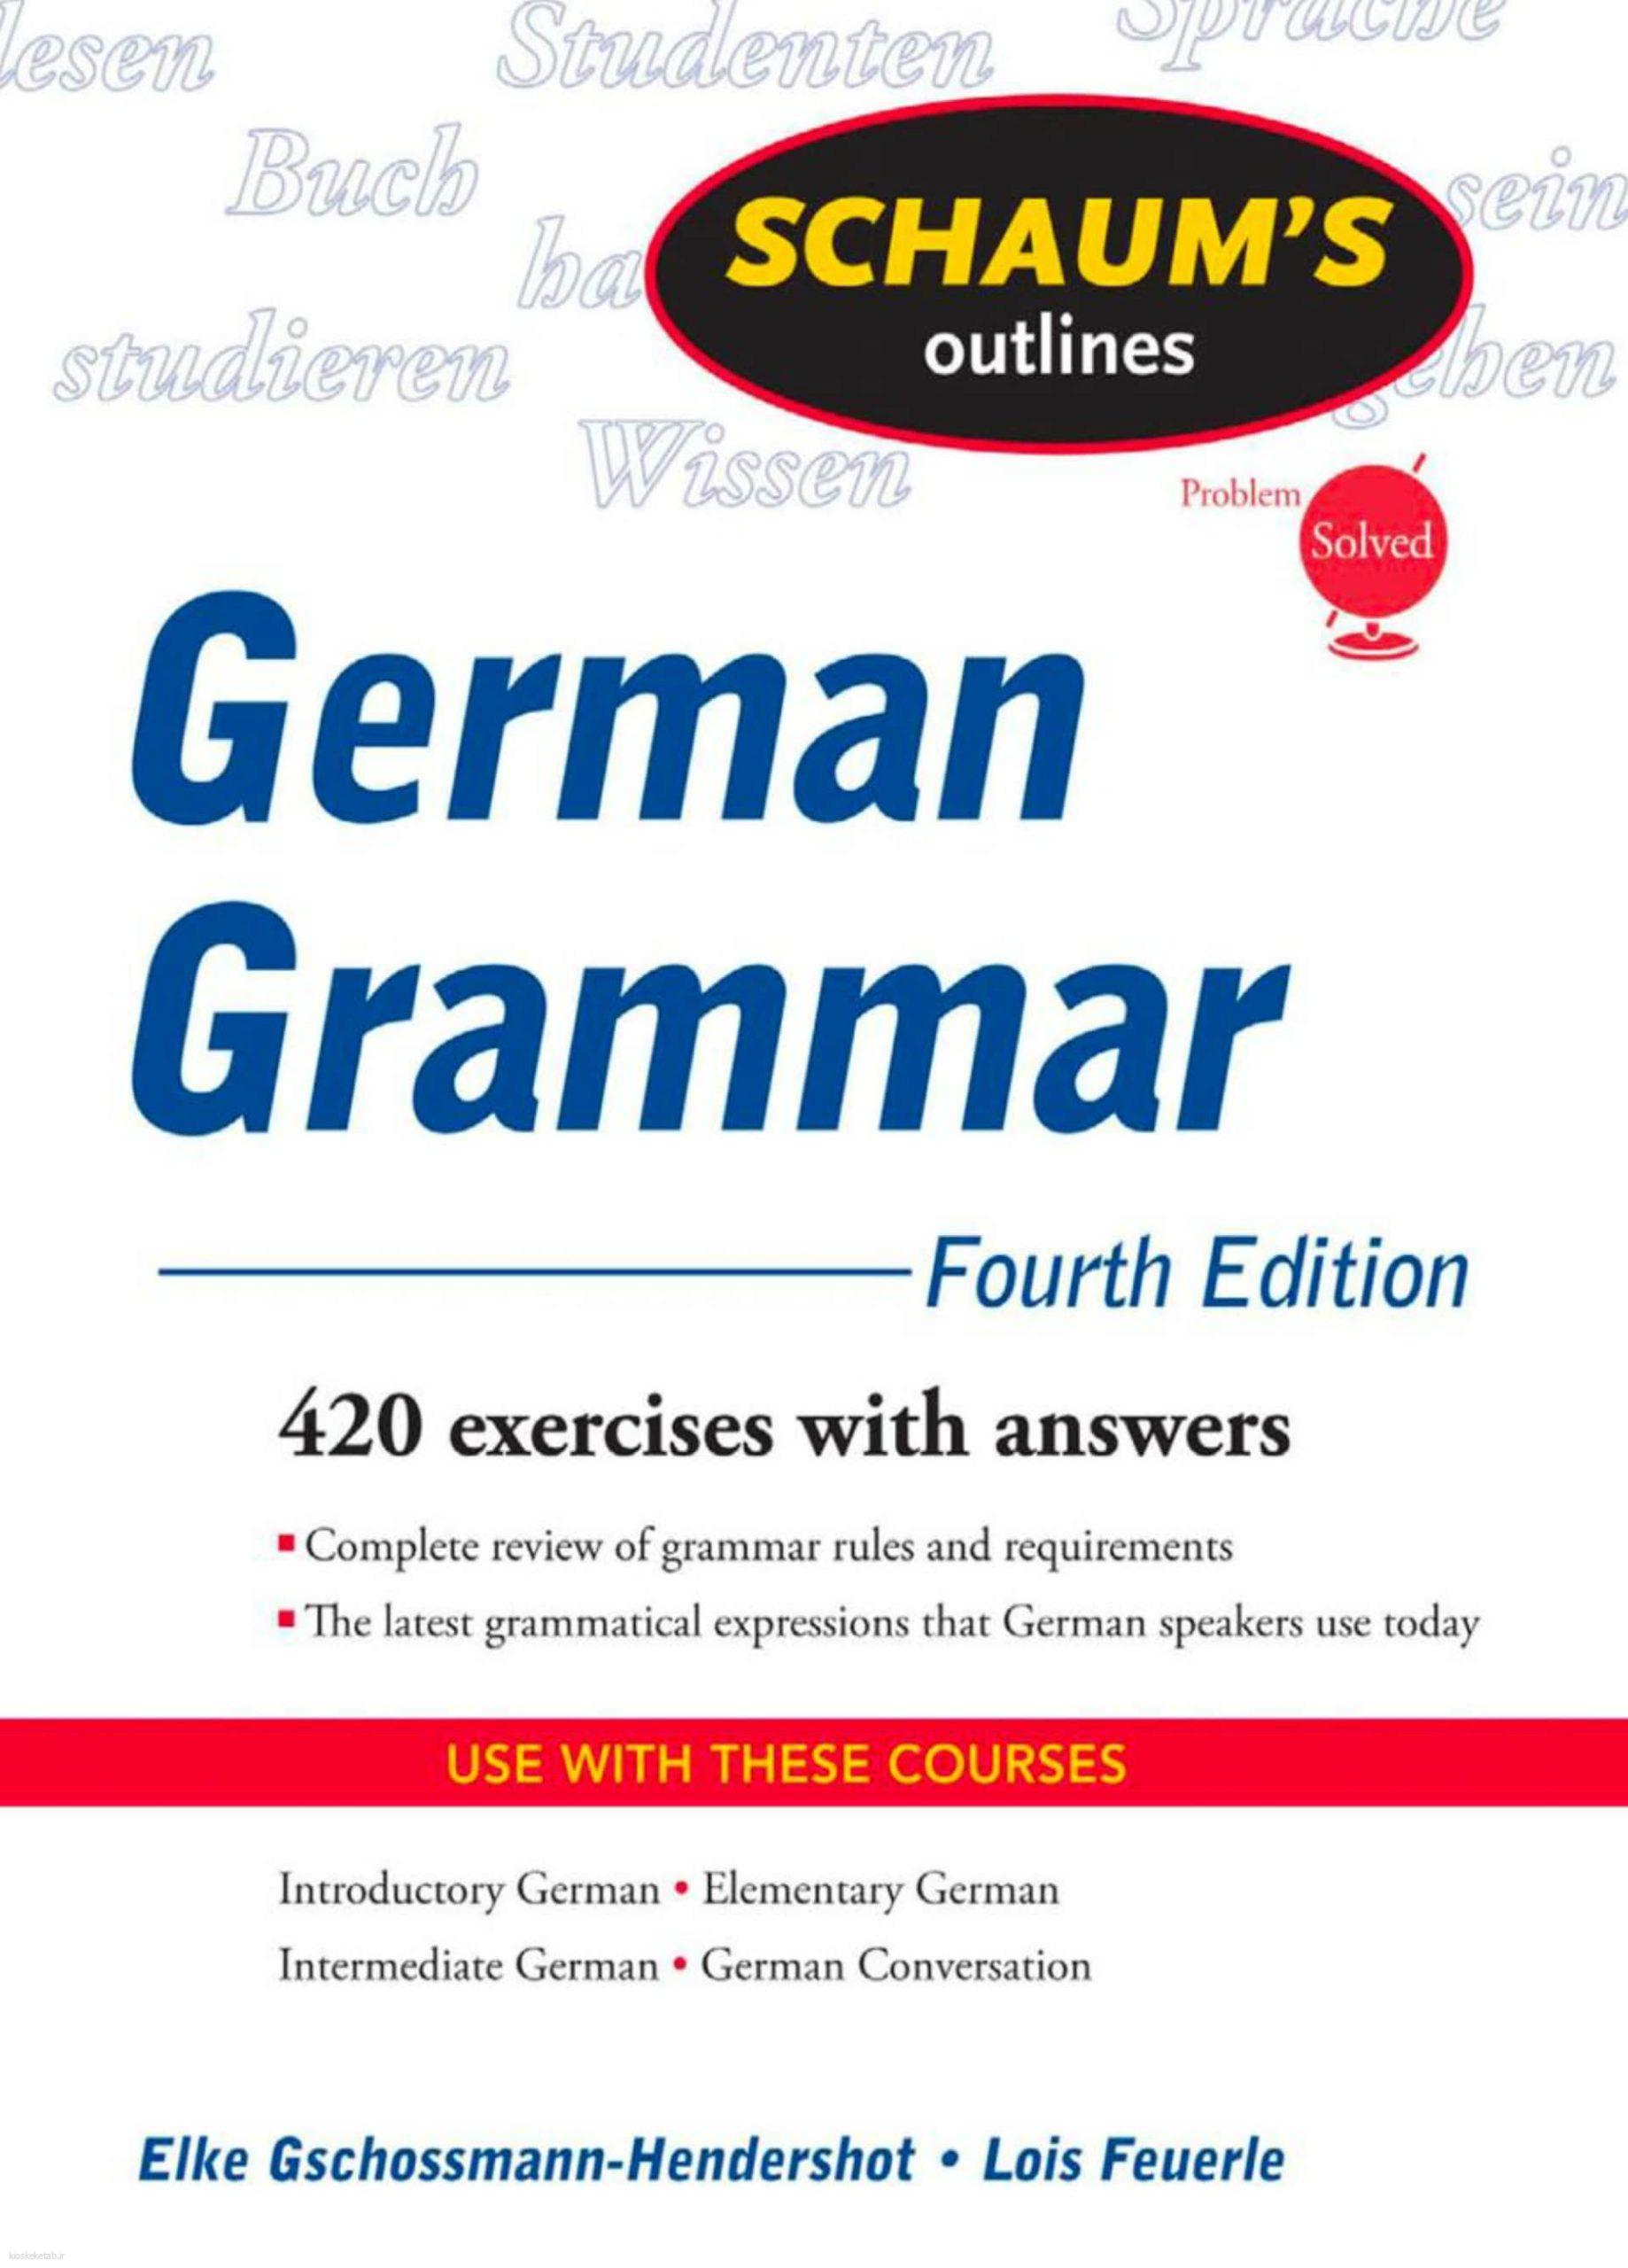 دانلود کتاب آلمانی german grammar